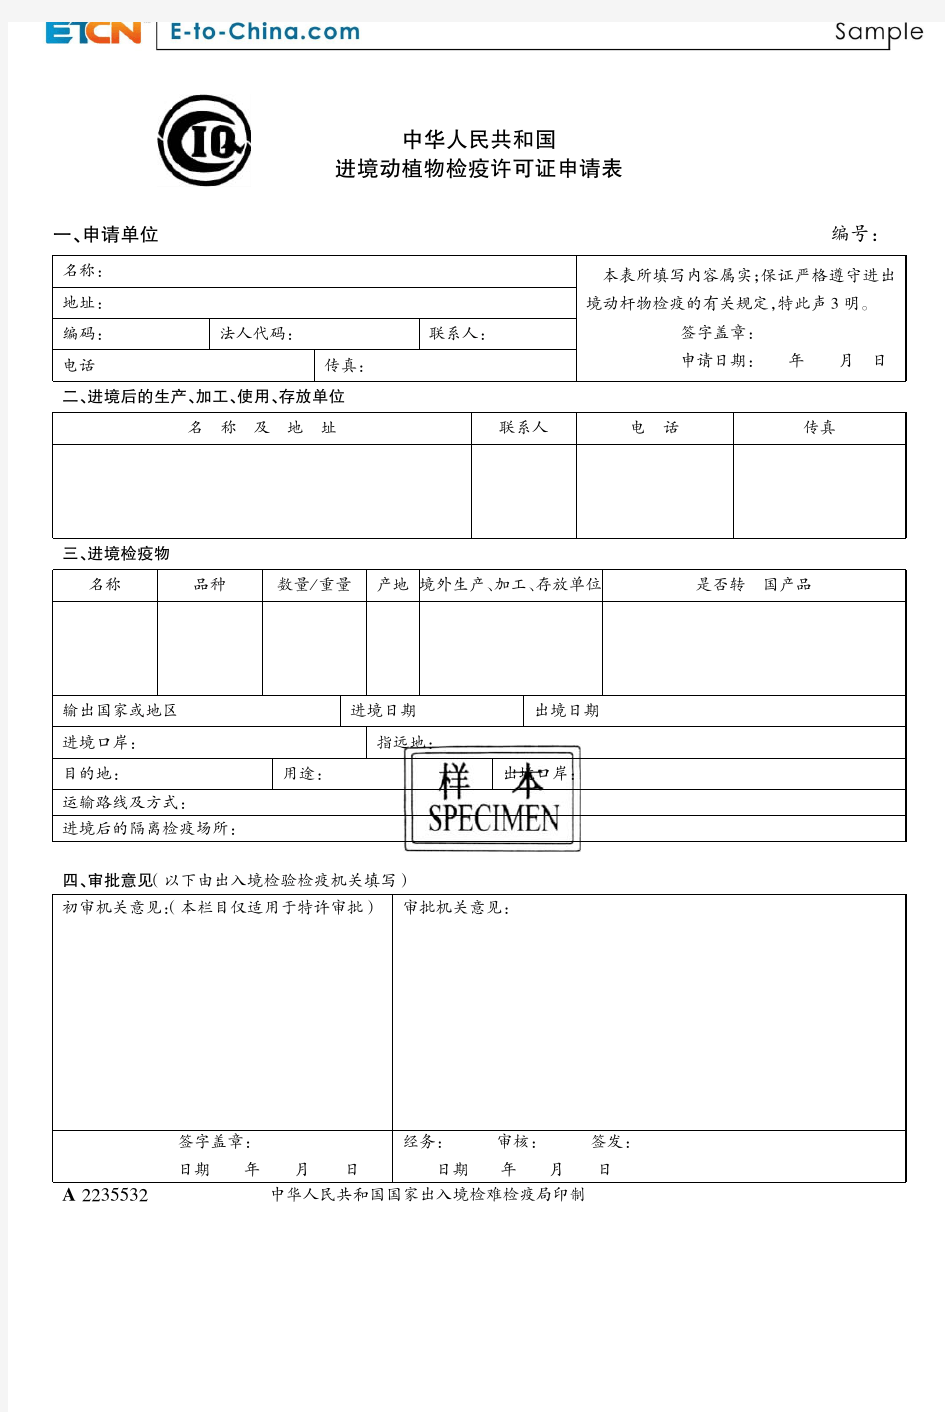 中华人民共和国 进境动植物检疫许可证申请表